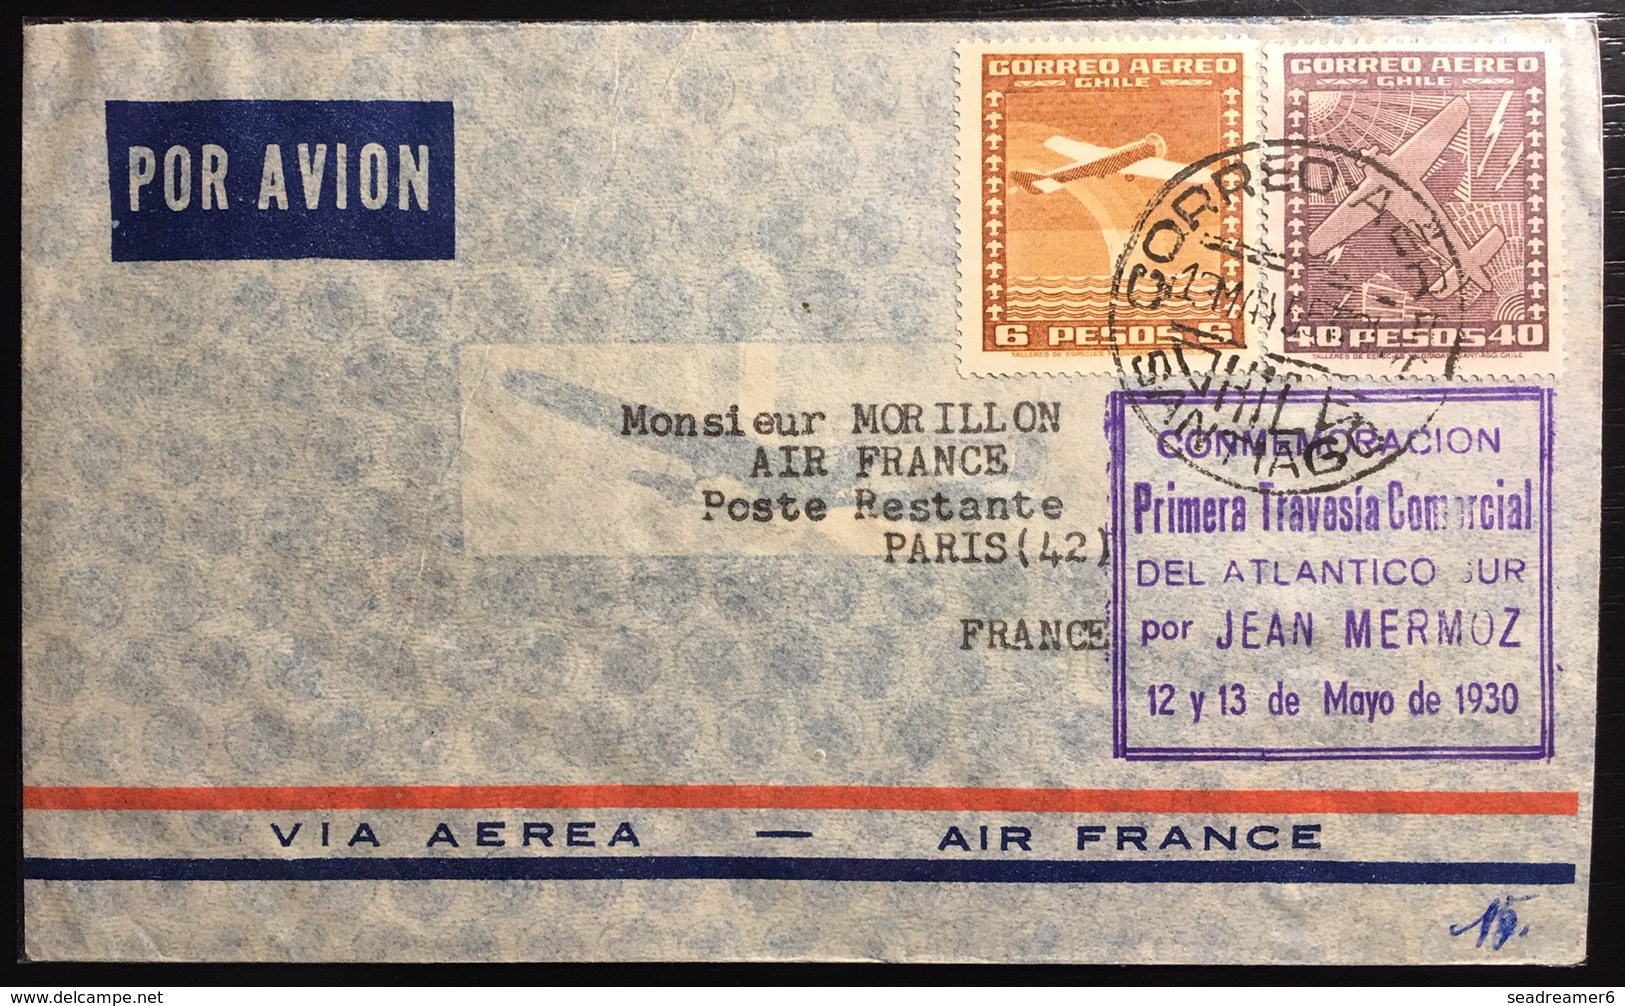 CHILI Poste Aérienne N°43,45 " Primera Traversia Commercial Del Atlantico Sur" Pour Paris Par Jean Mermoz 12 13 May 1930 - Chili